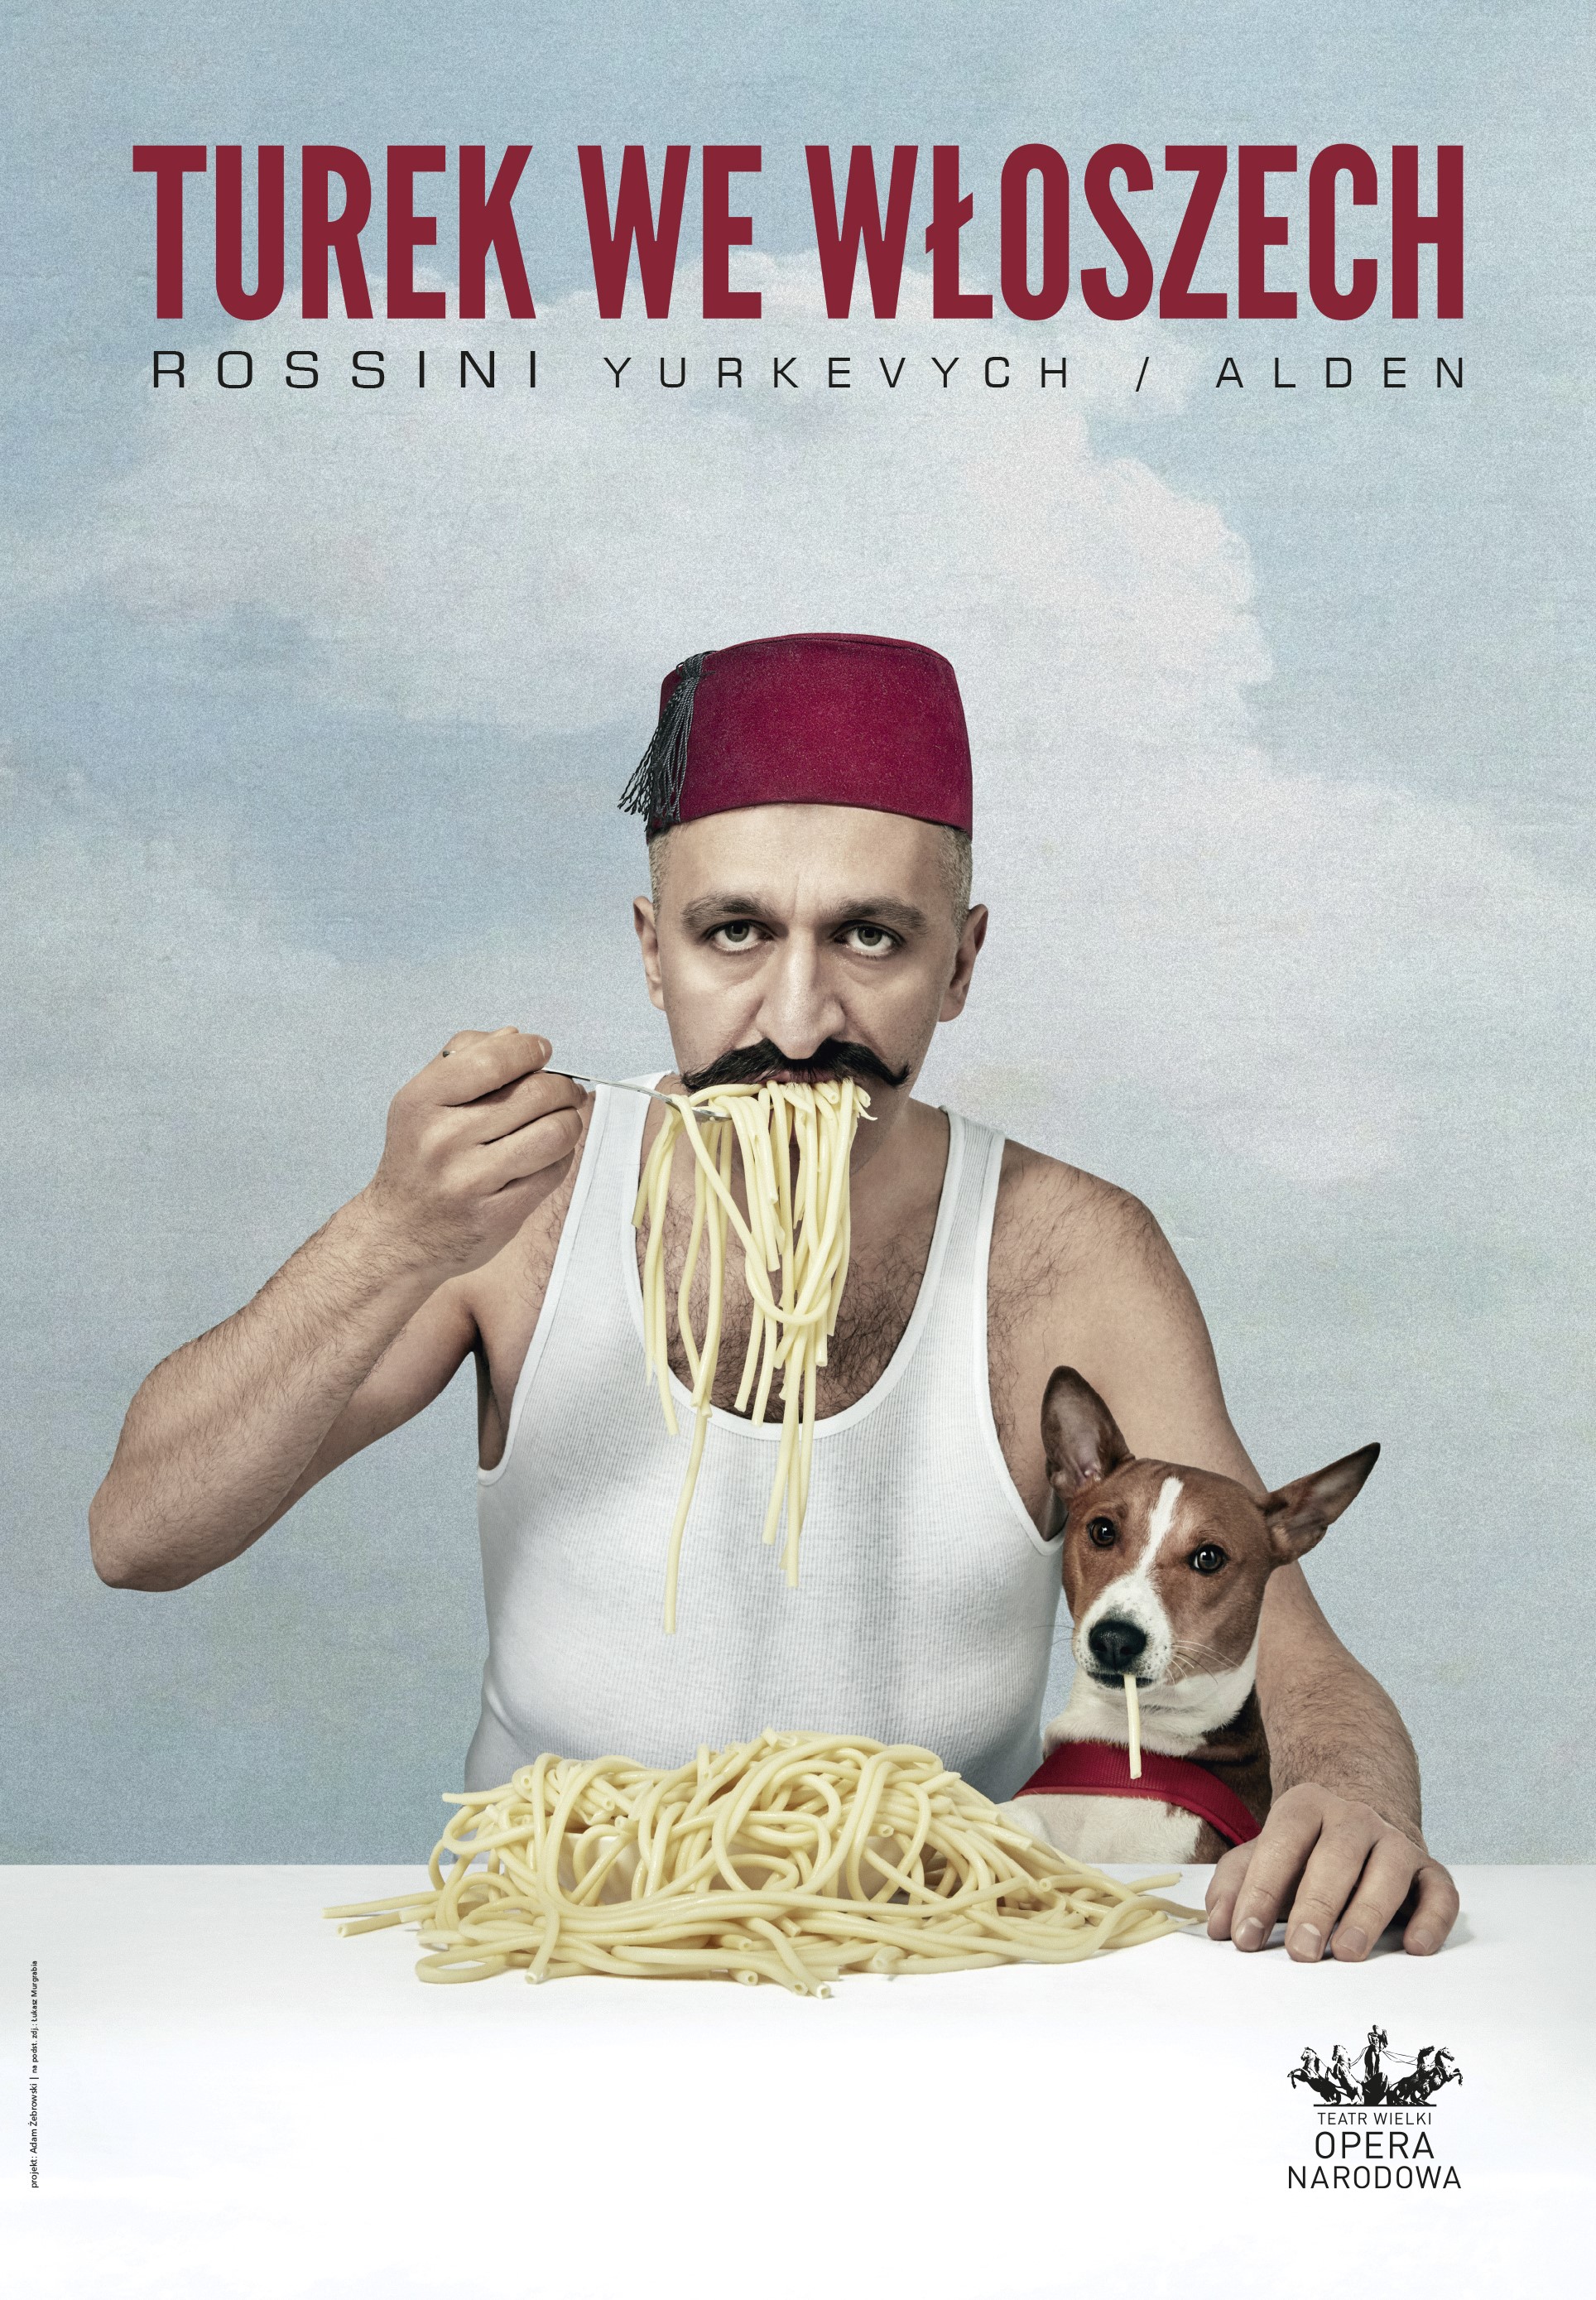 Plakat promujący spektakl "Turek we Włoszech" w Teatrze Wielkim - Operze Narodowej; Foto: Łukasz Murgrabia; Projekt plakatu: Adam Żebrowski